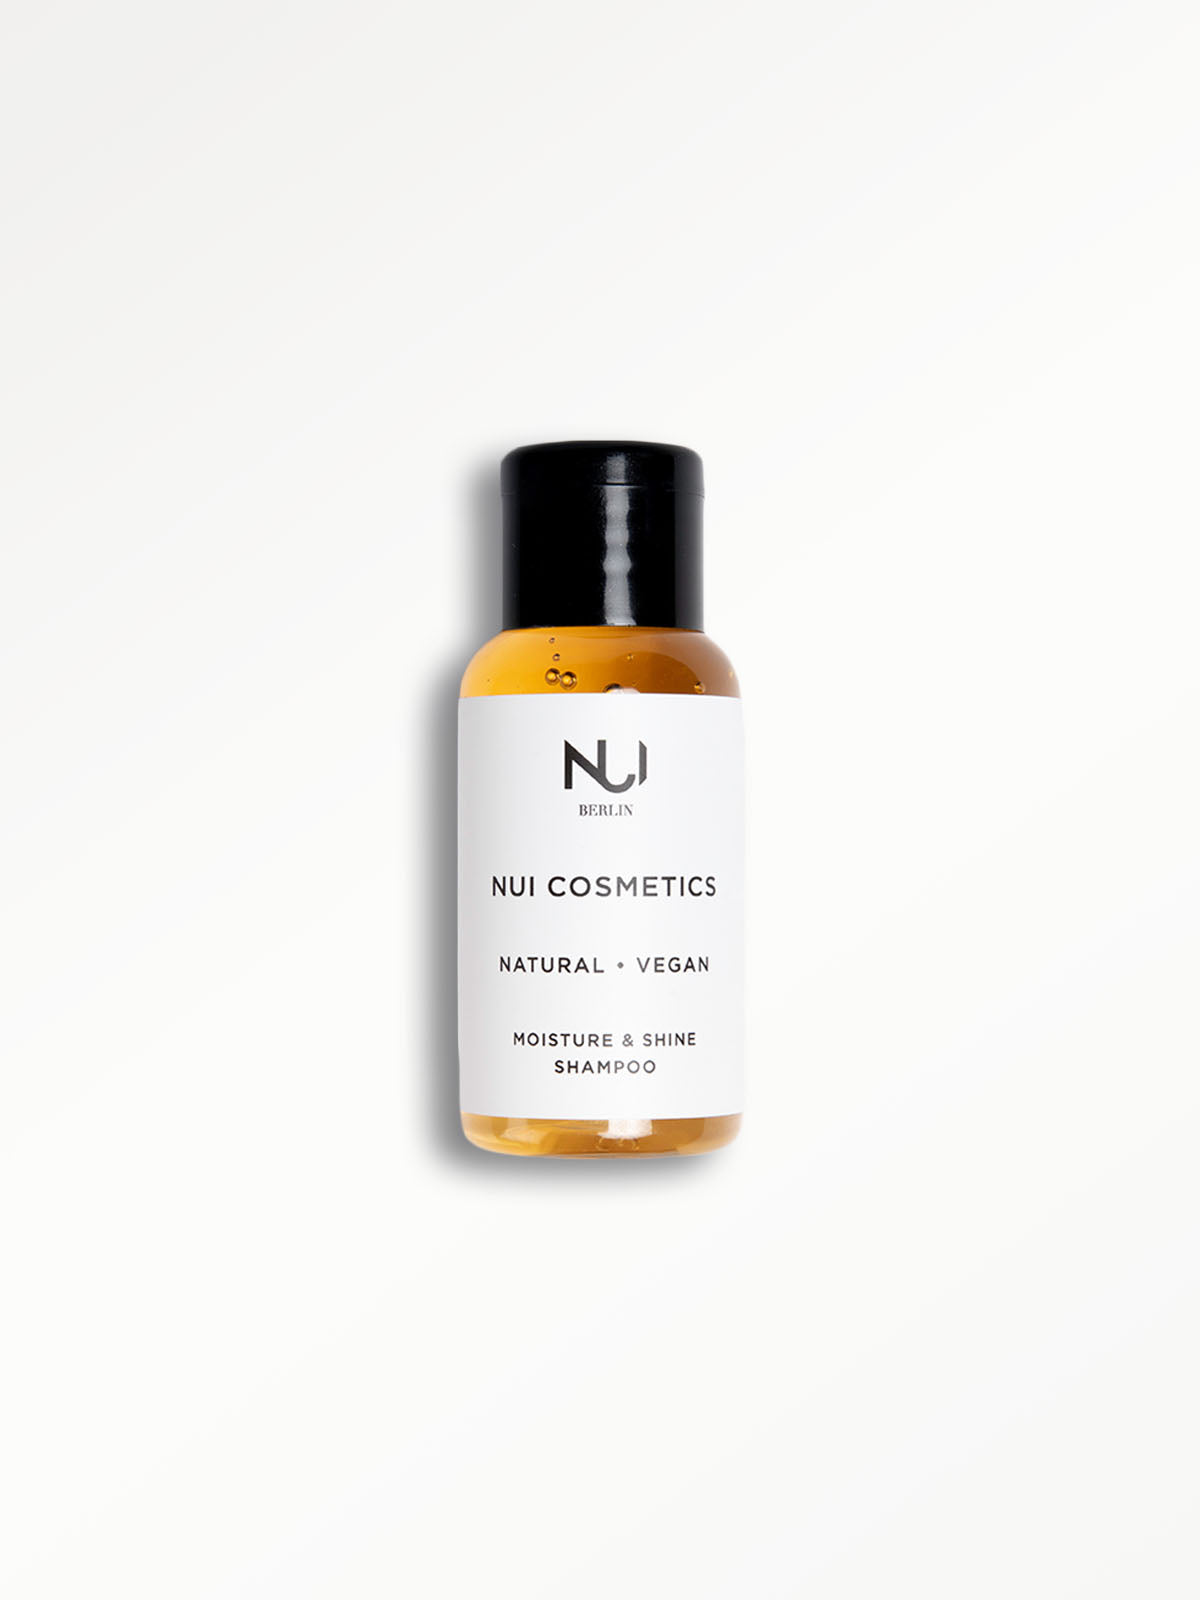 NUI Natural & vegan Moisture shine Shampoo Travelsize